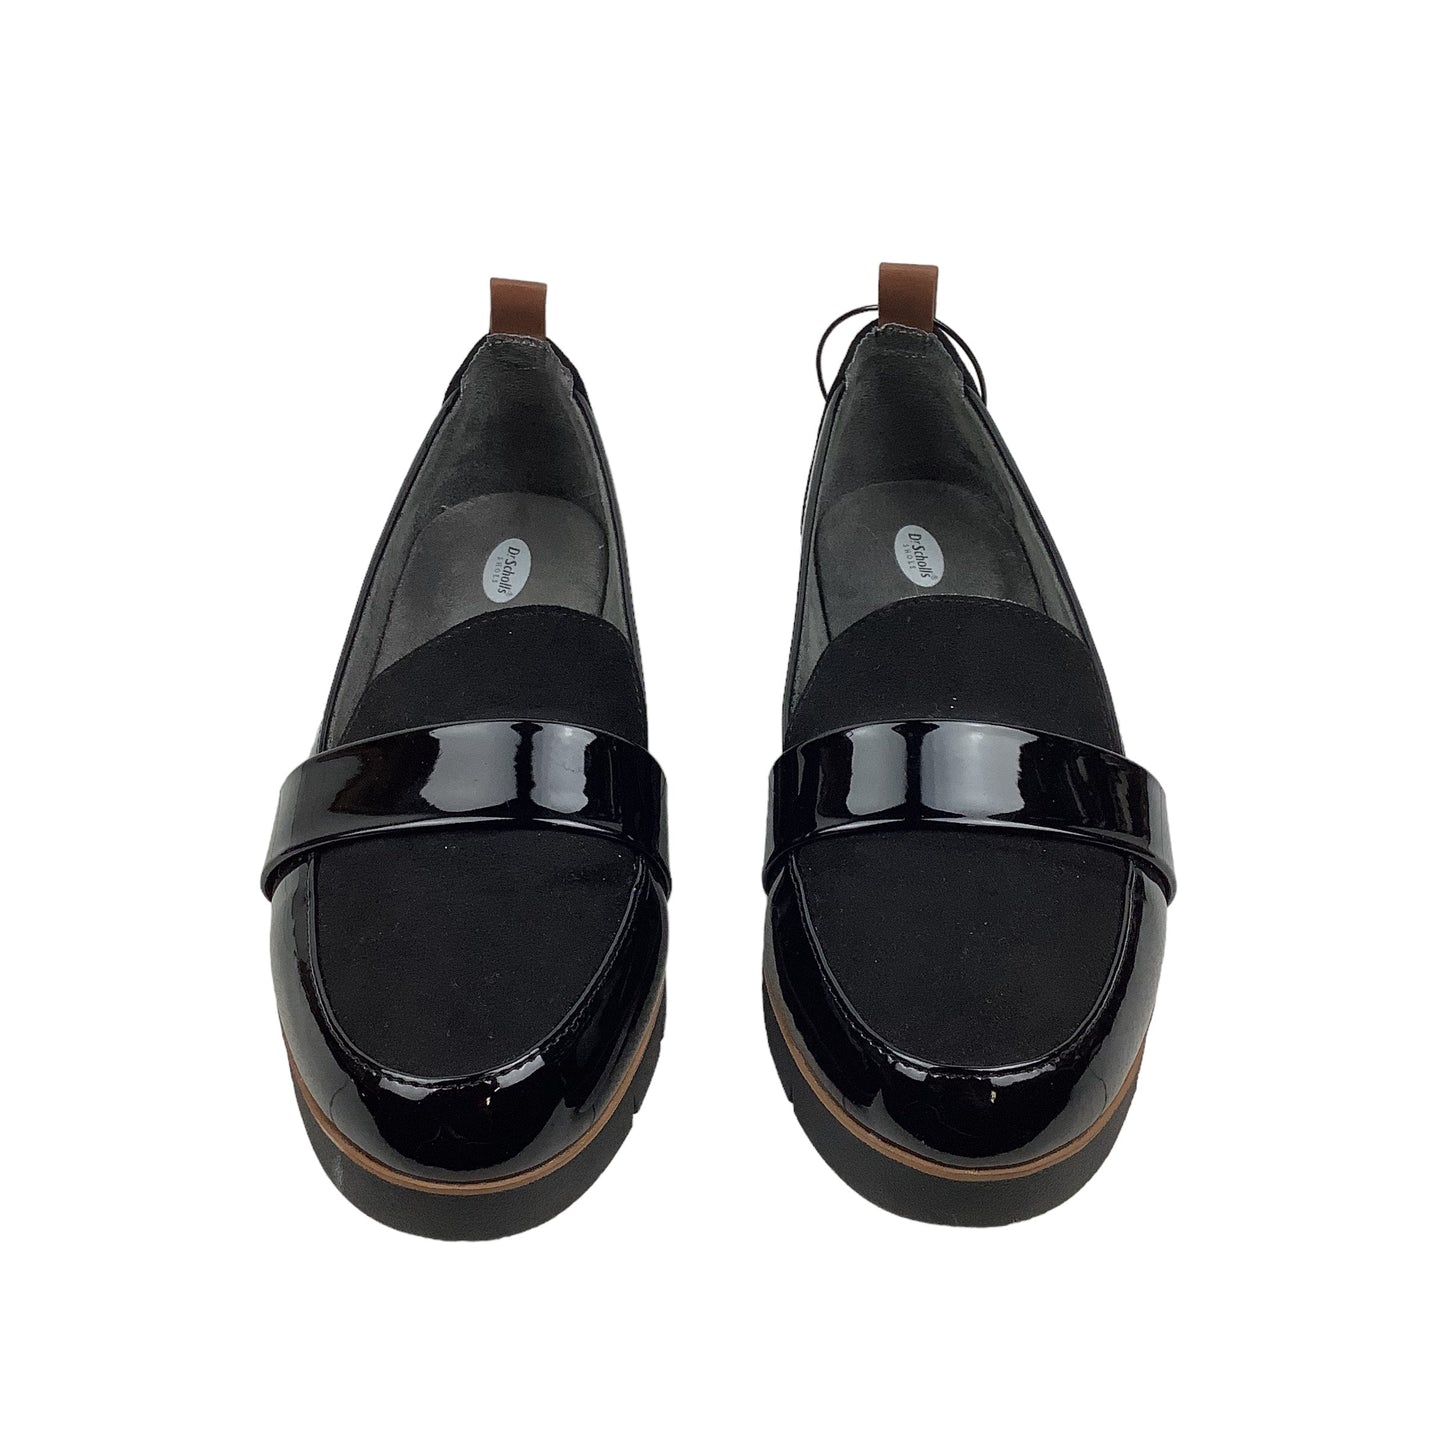 Black Shoes Flats Dr Scholls, Size 6